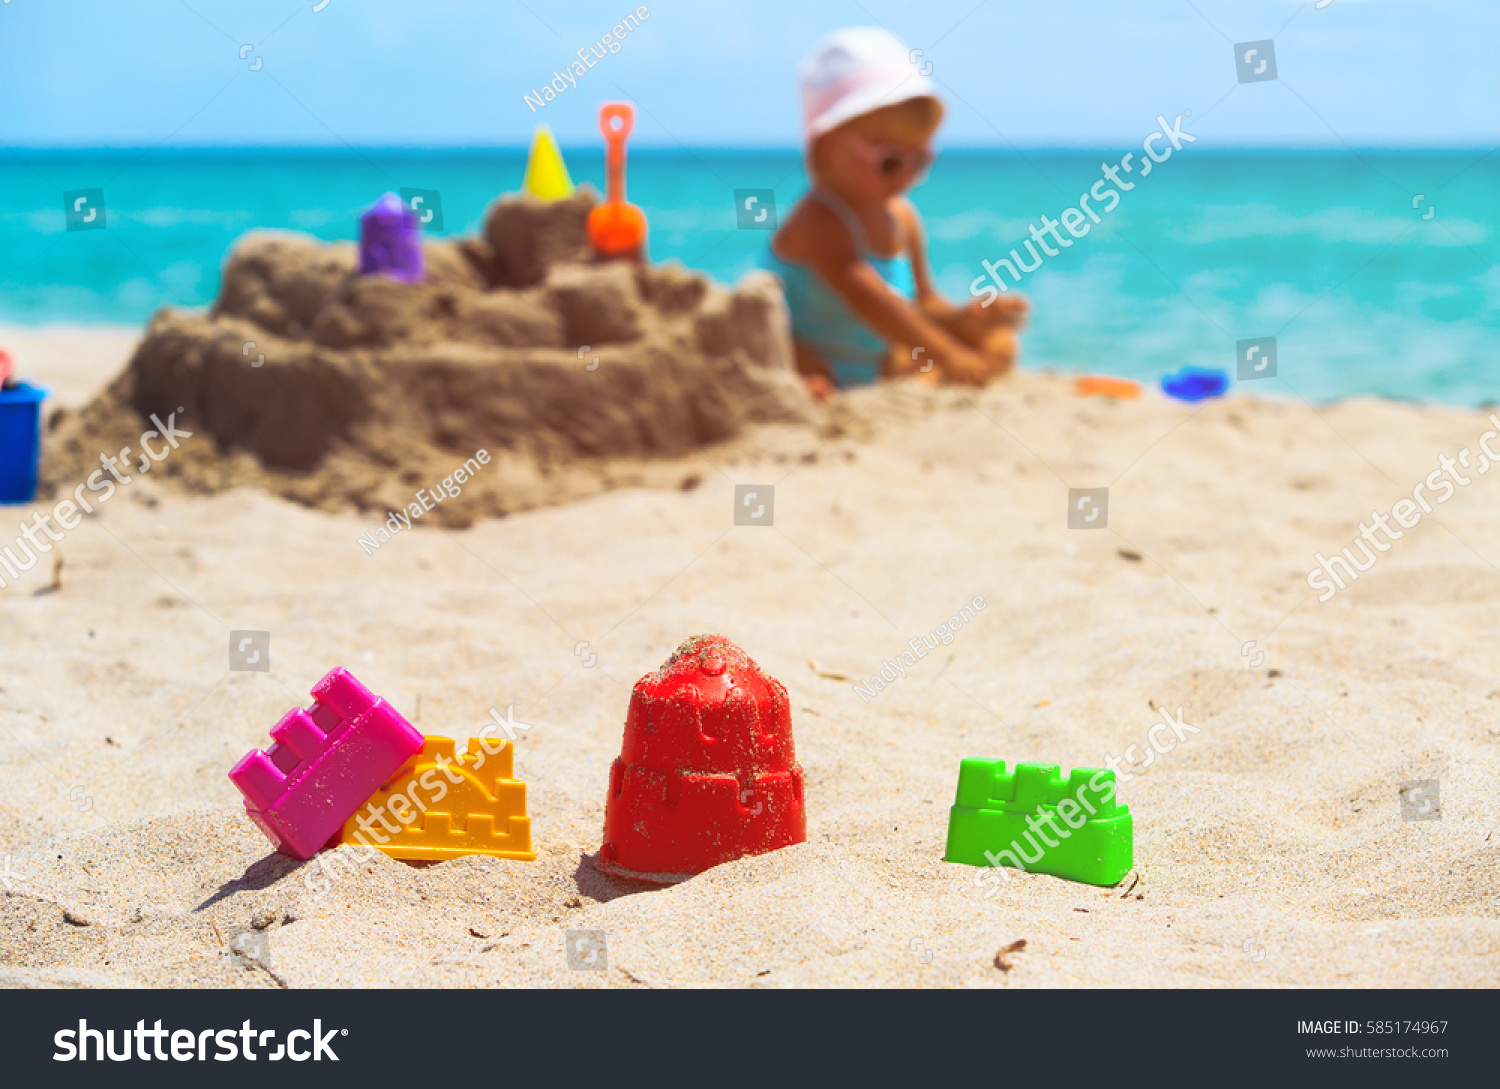 Kids Toys Little Girl Building Sandcastle Stock Photo 585174967 ...